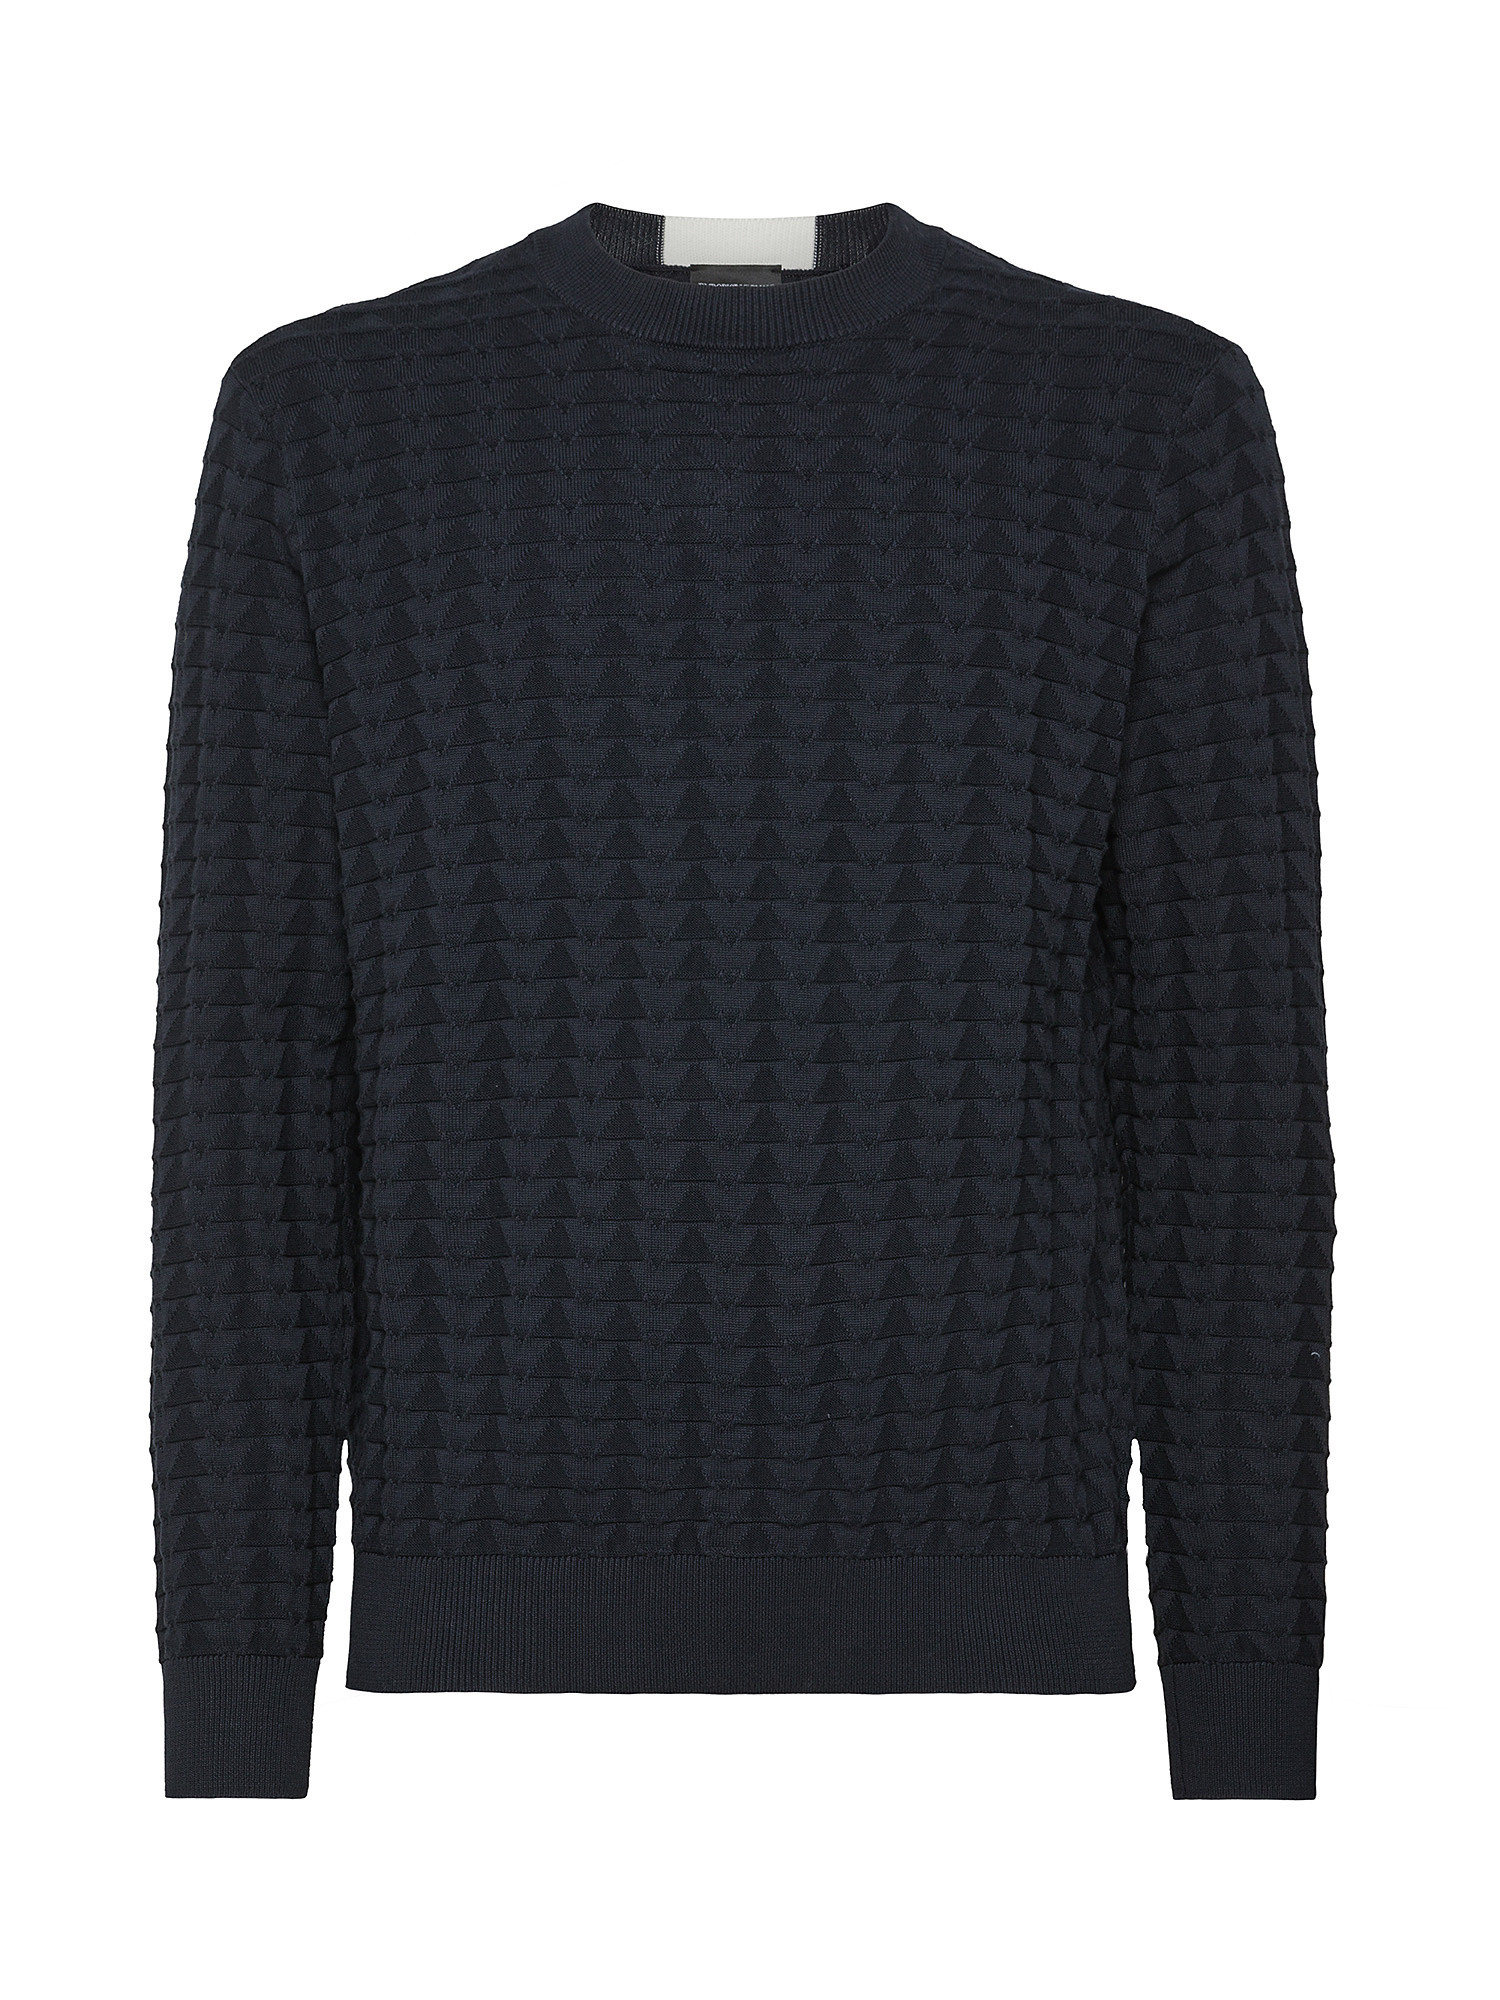 Emporio Armani - Pullover in cotone lavorato a maglia, Blu scuro, large image number 0